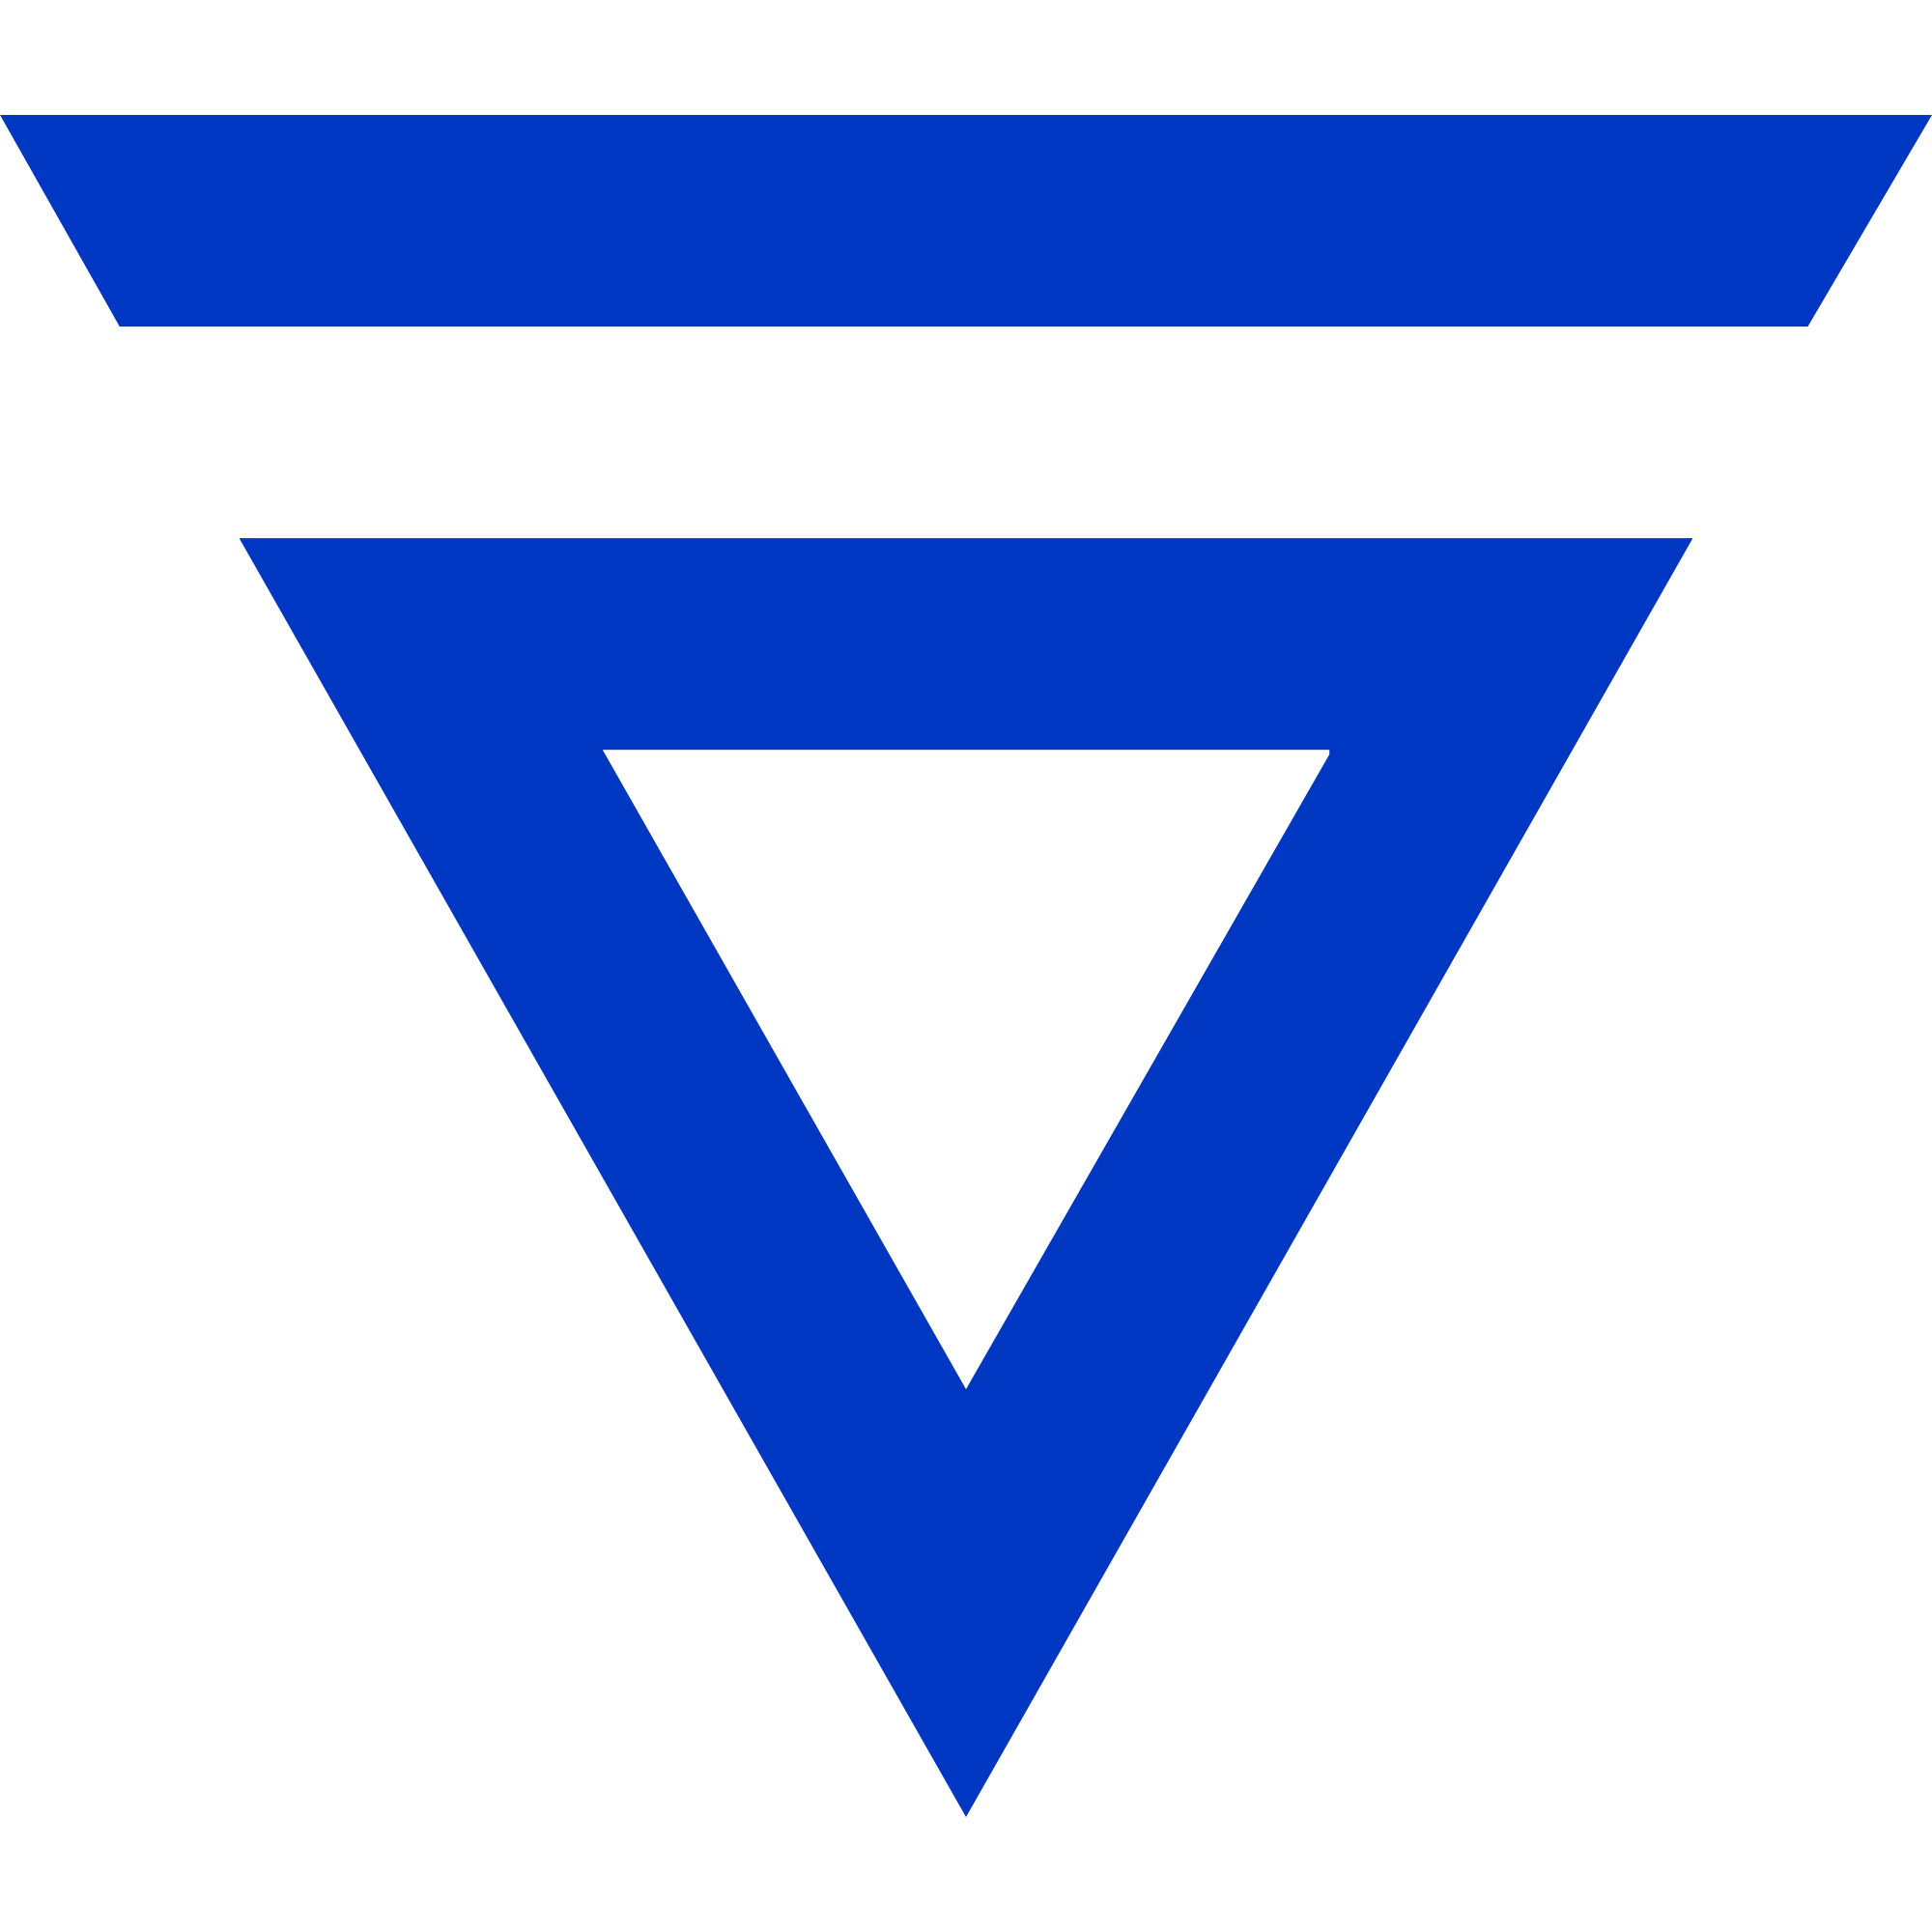 Elastos (ELA) logo